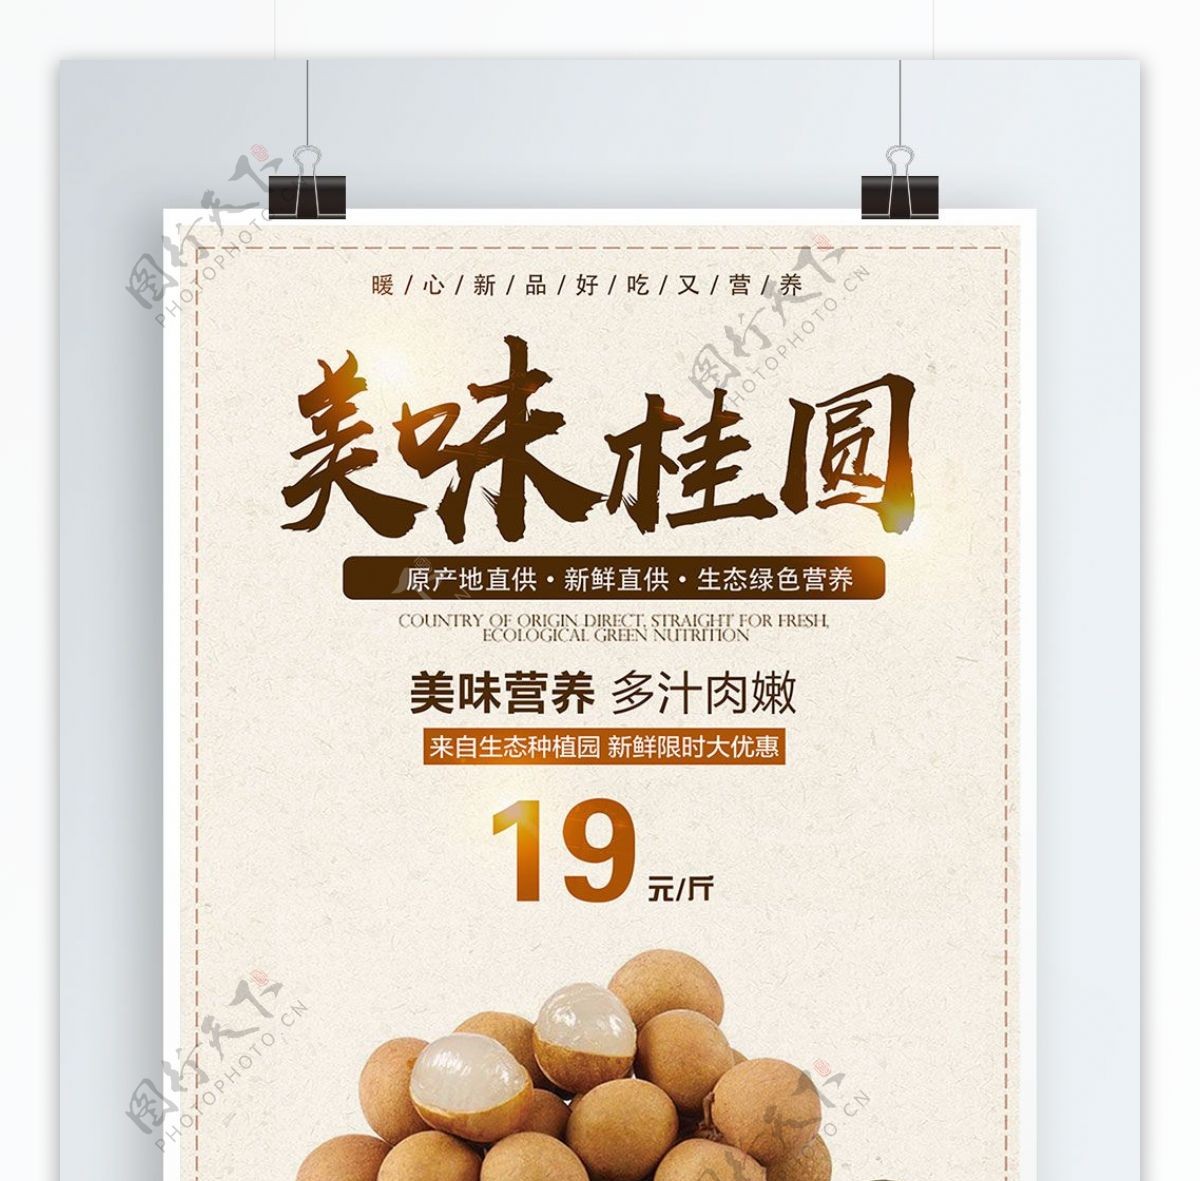 复古中国风美食桂圆商业海报设计